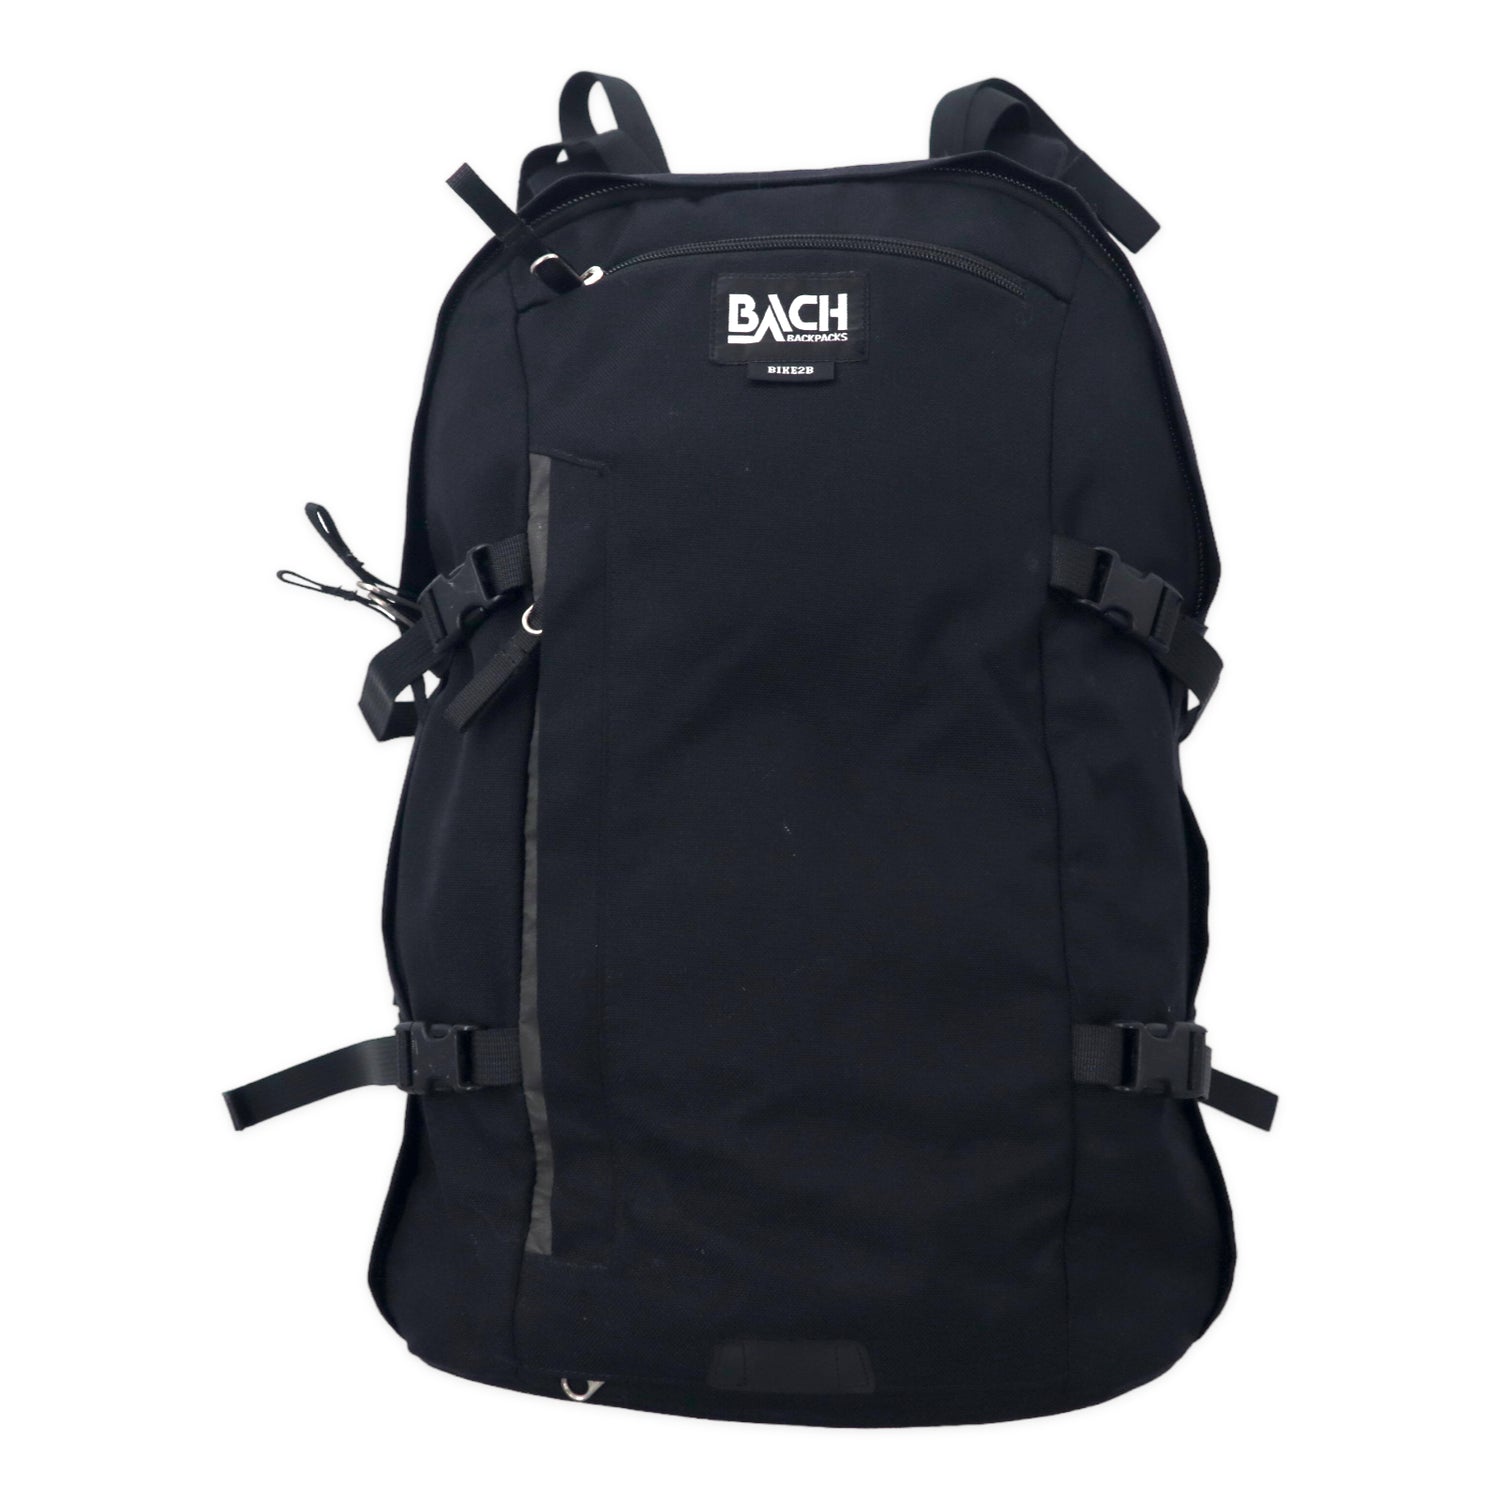 BACH Backpack Rucksack BIKE 2B 30 Black PC Sleeve Cordura Nylon